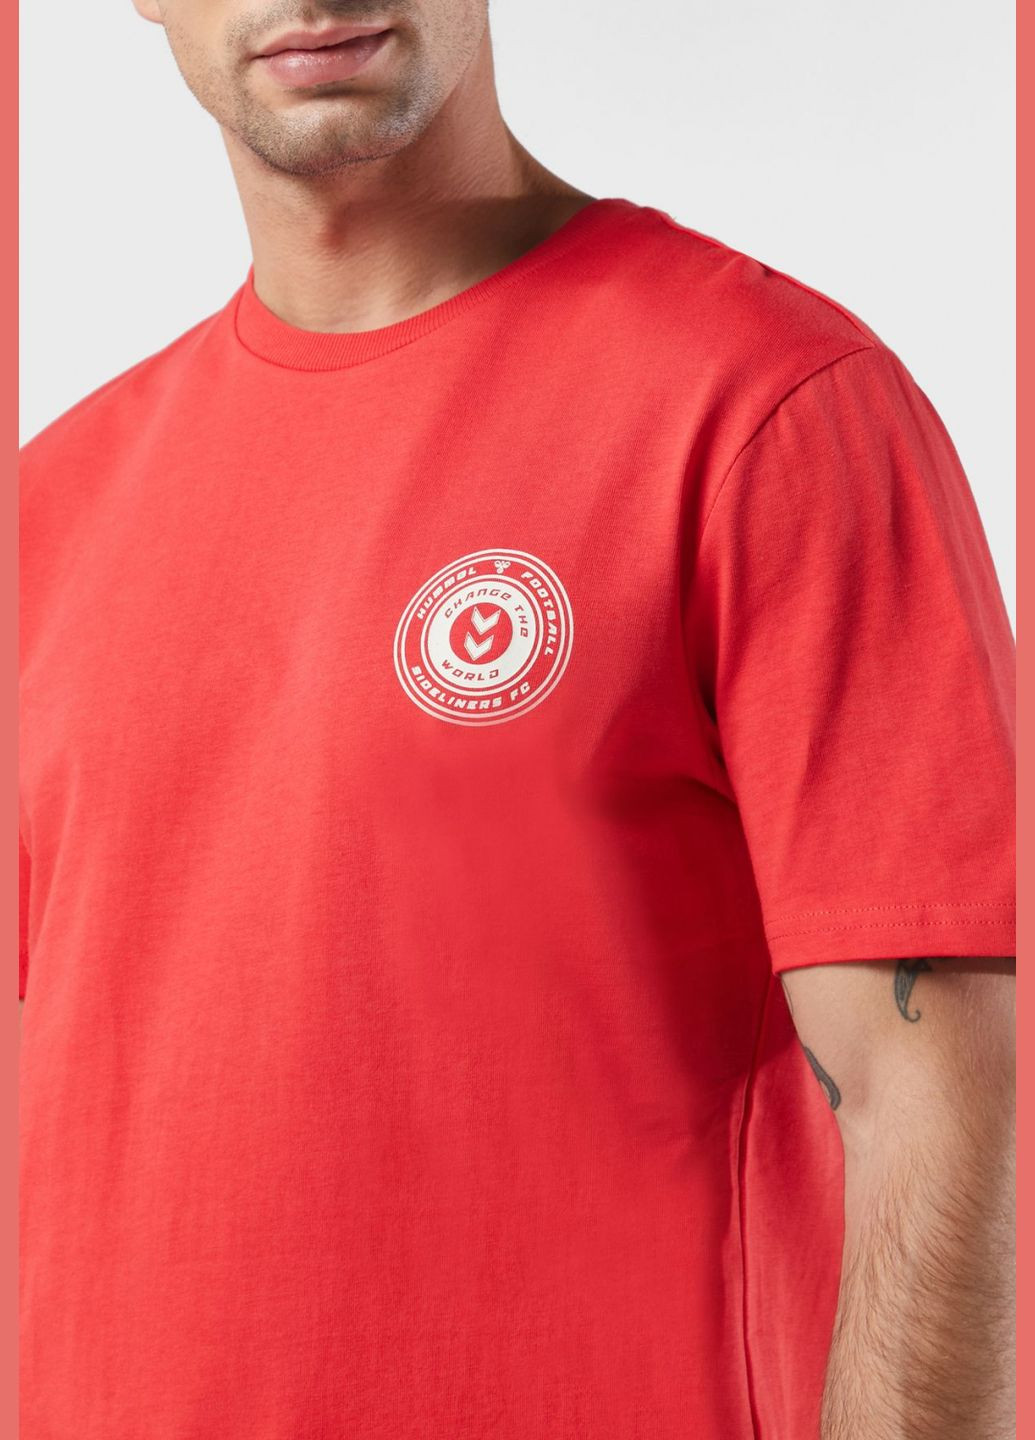 Красная футболка с логотипом для мужчины 212742 Hummel